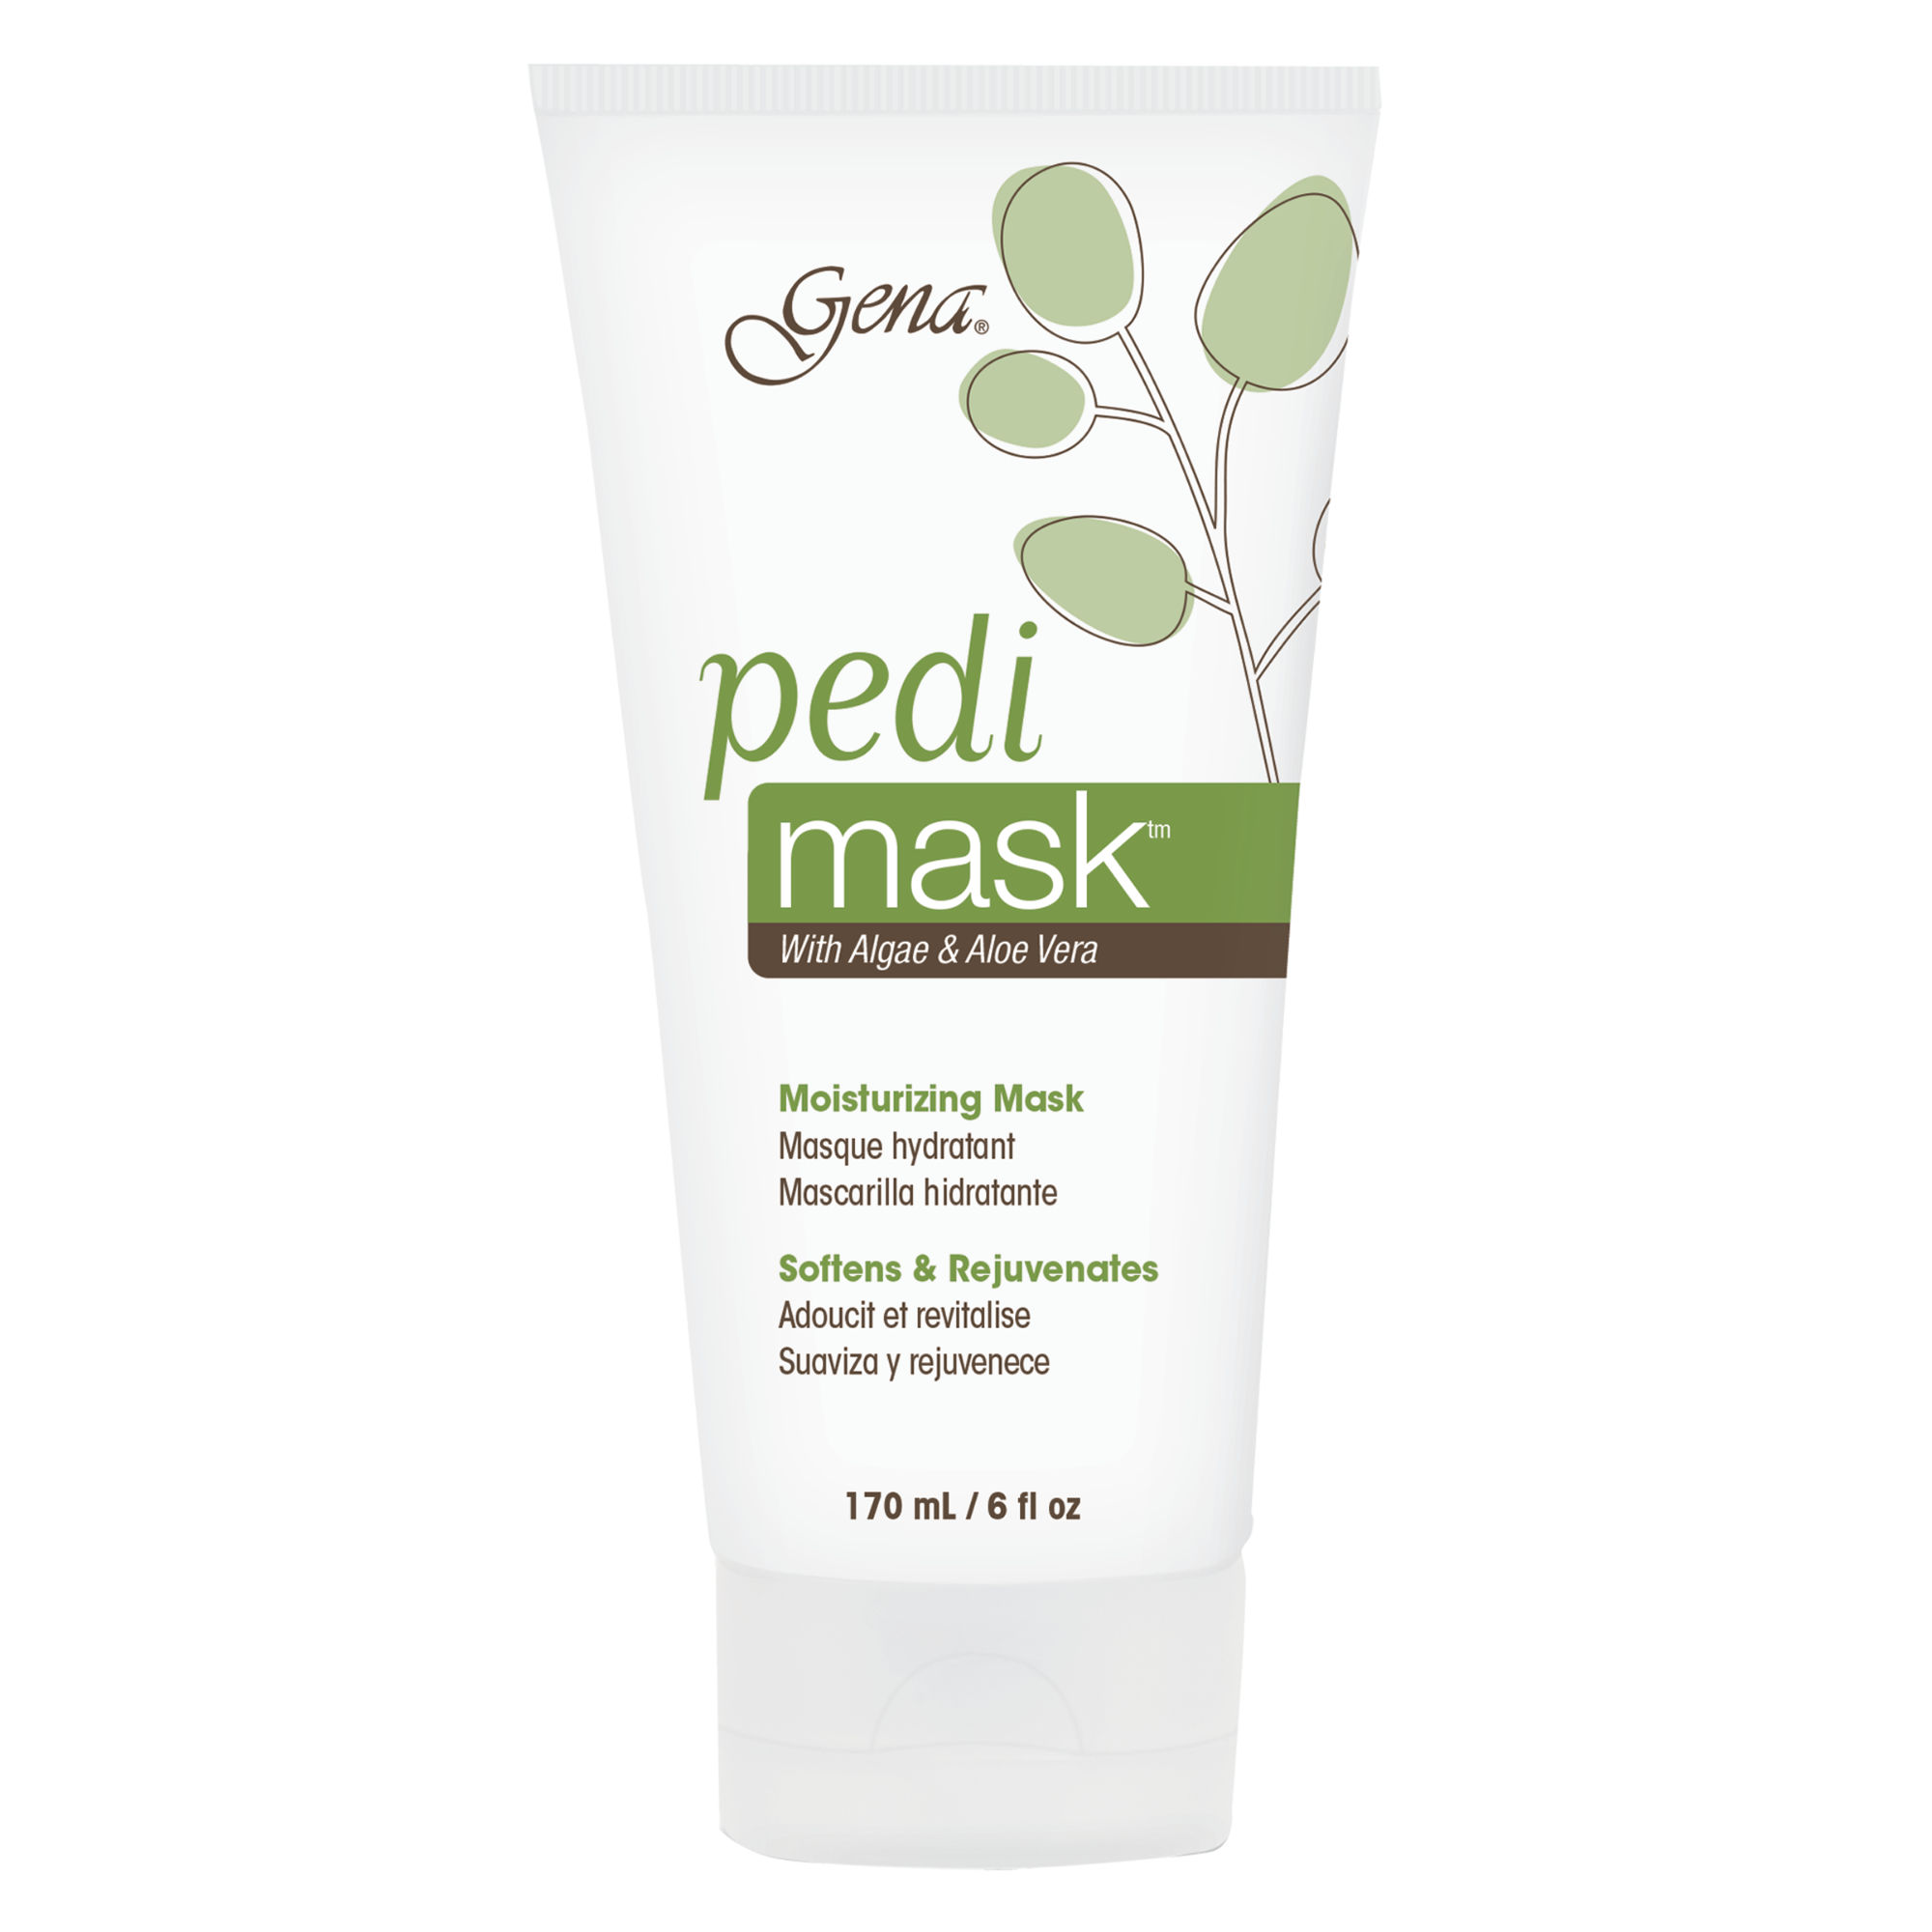 Pedi Mask with Algae & Aloe Vera